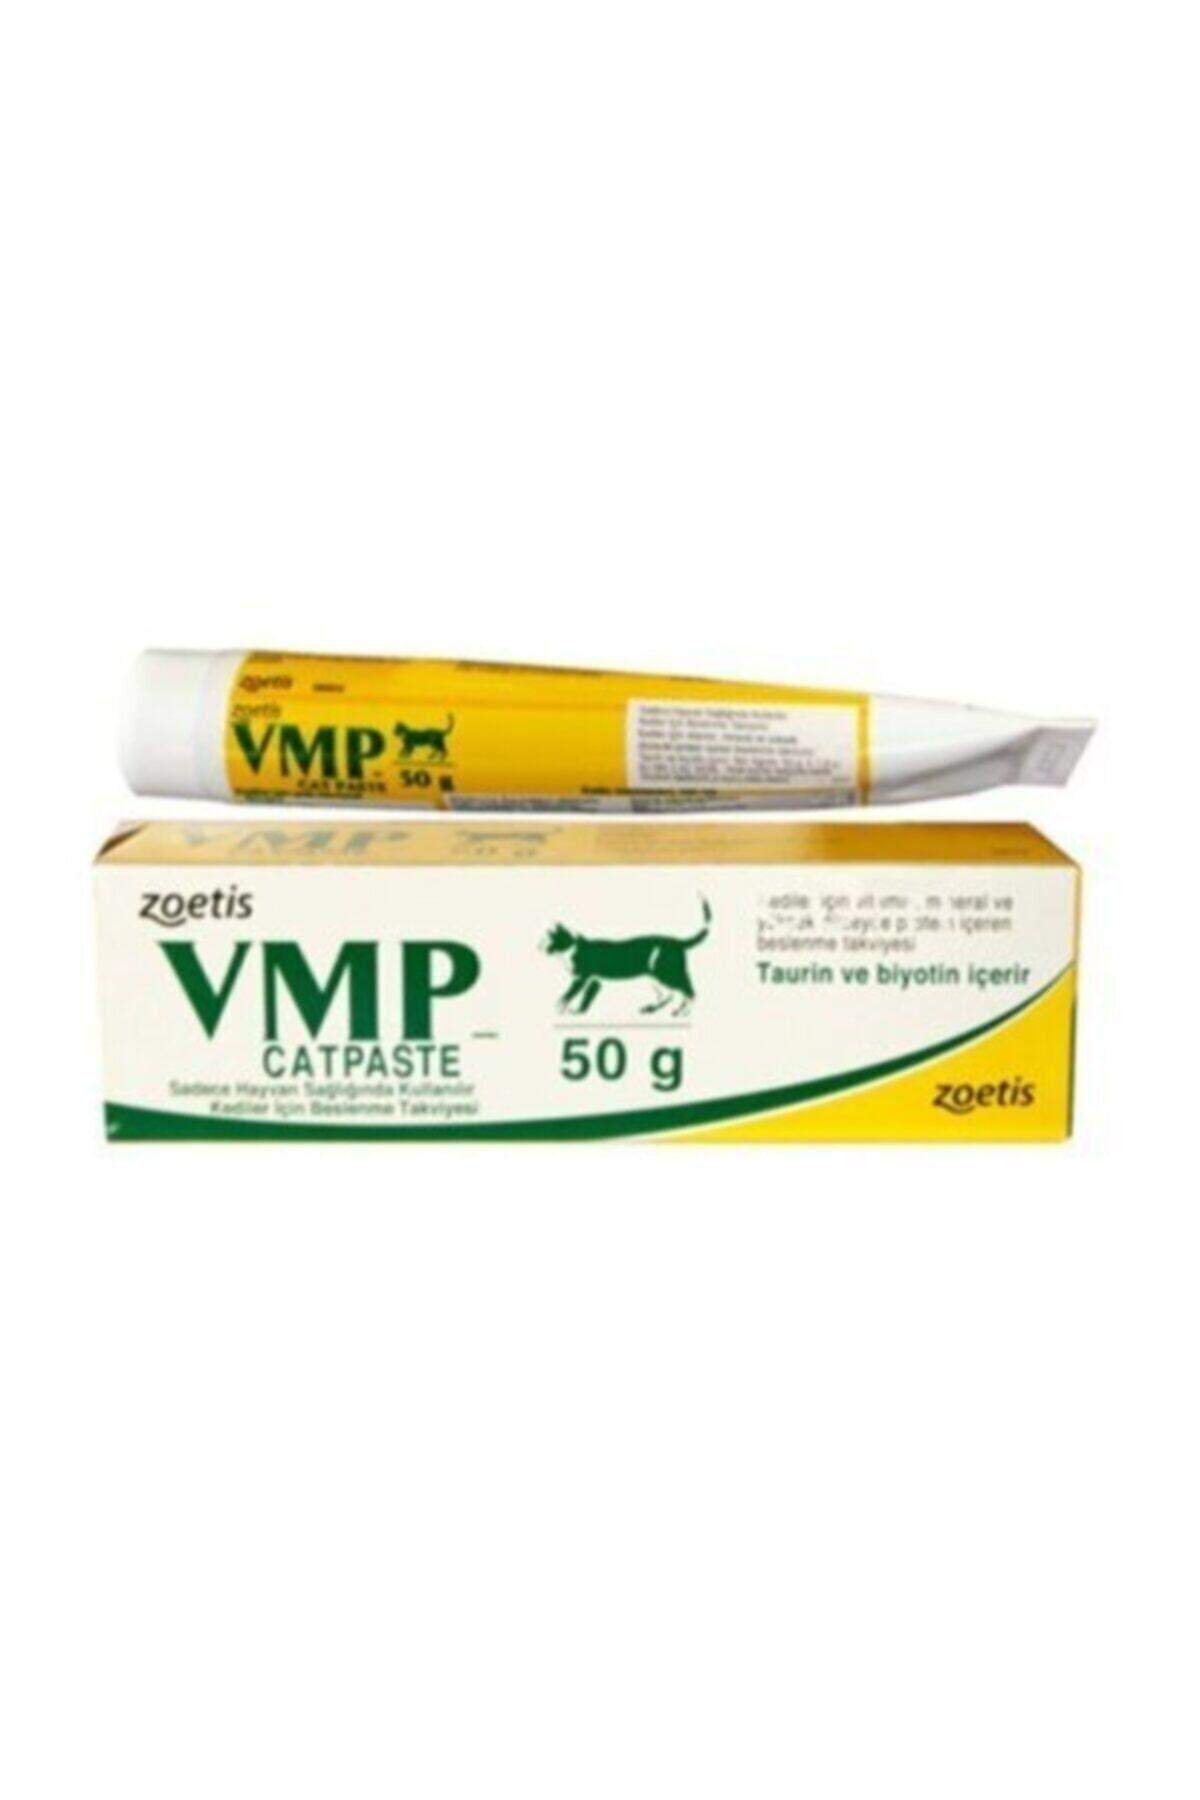 ZOETİS Vmp Cat Paste Vitamin Mineral Ve Protein Kedi Macun Zvmpcp